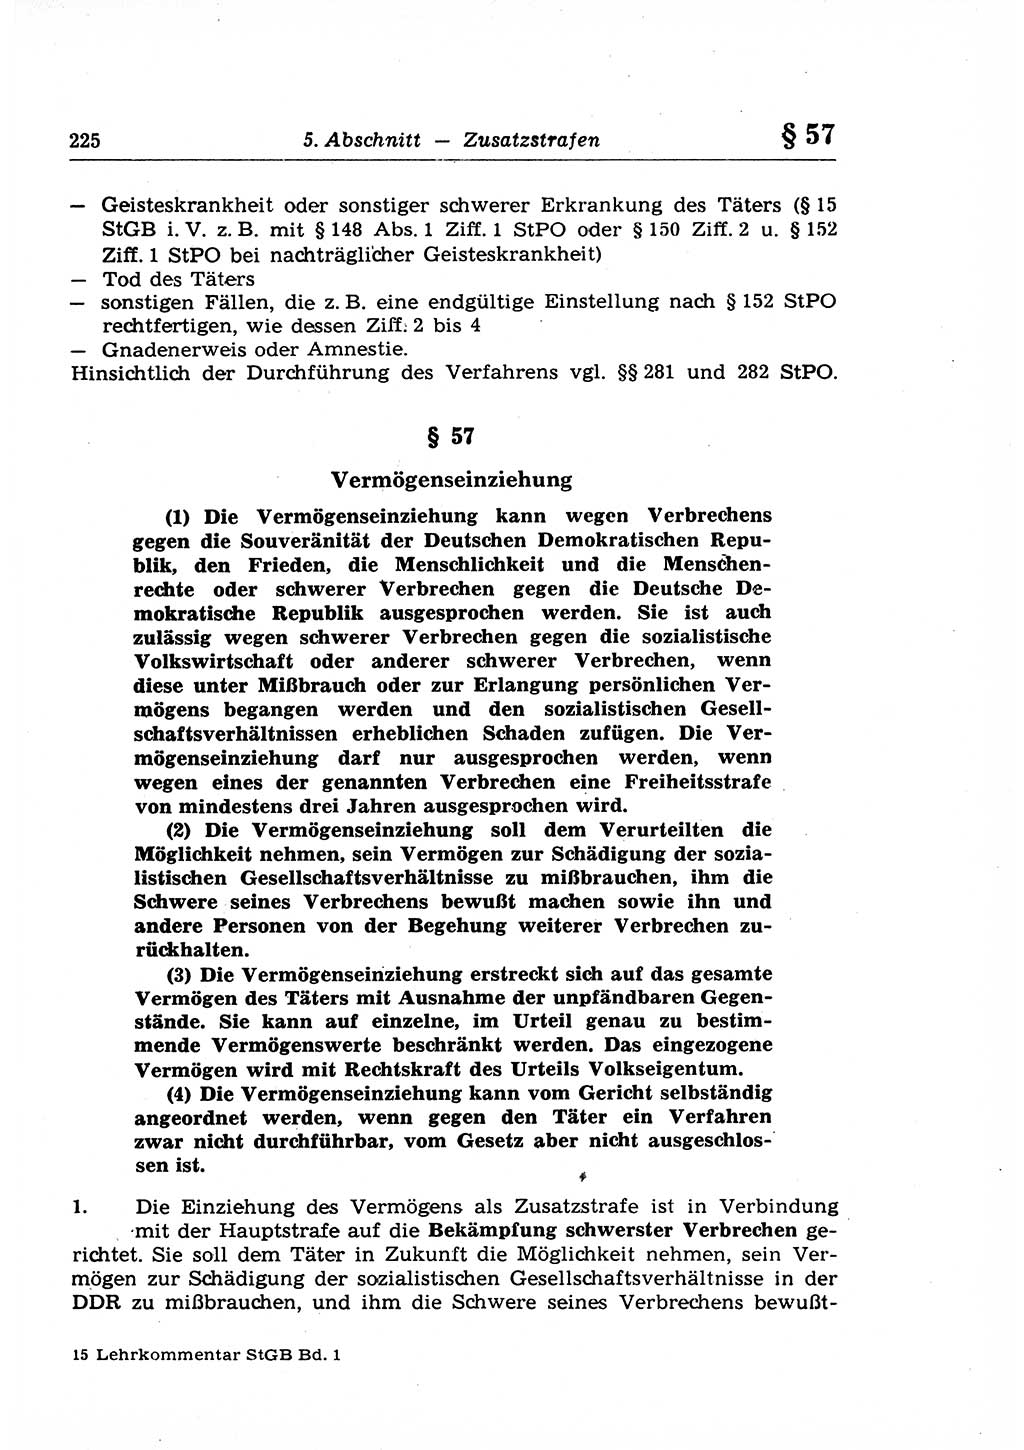 Strafrecht der Deutschen Demokratischen Republik (DDR), Lehrkommentar zum Strafgesetzbuch (StGB), Allgemeiner Teil 1969, Seite 225 (Strafr. DDR Lehrkomm. StGB AT 1969, S. 225)